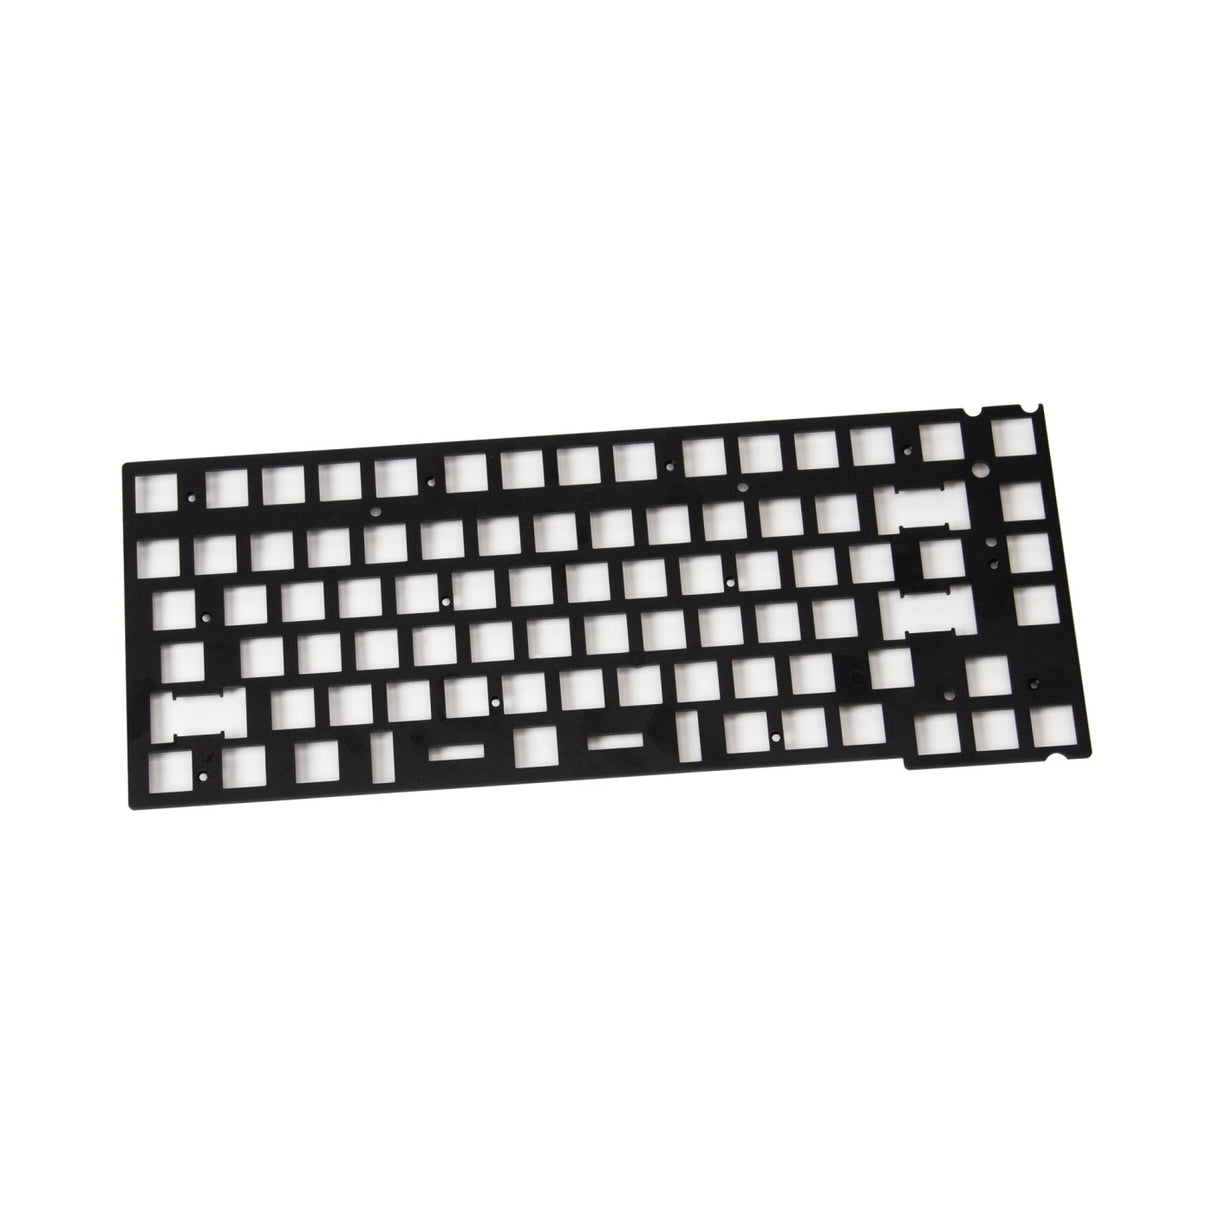 Keychron V1 Keyboard Aluminum Plate ANSI Layout